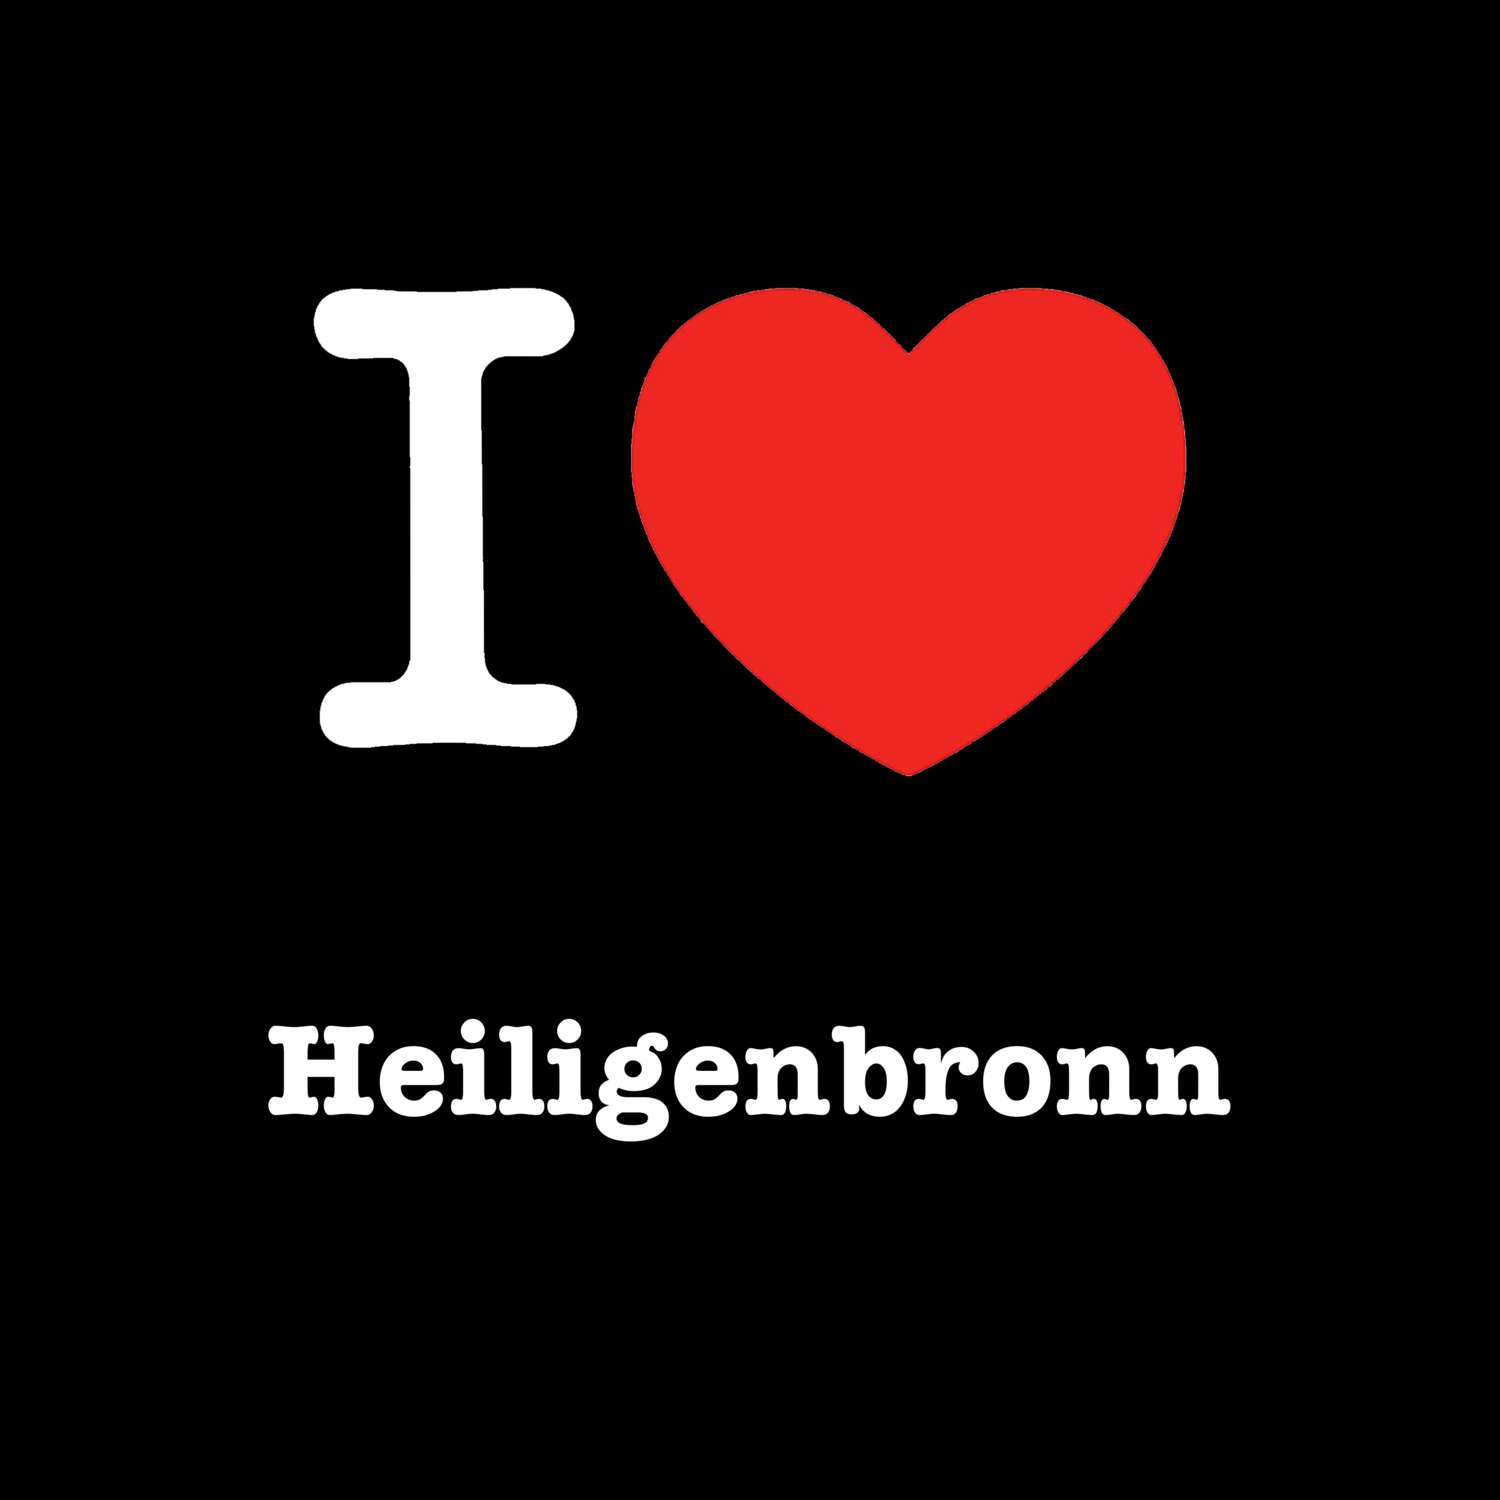 Heiligenbronn T-Shirt »I love«